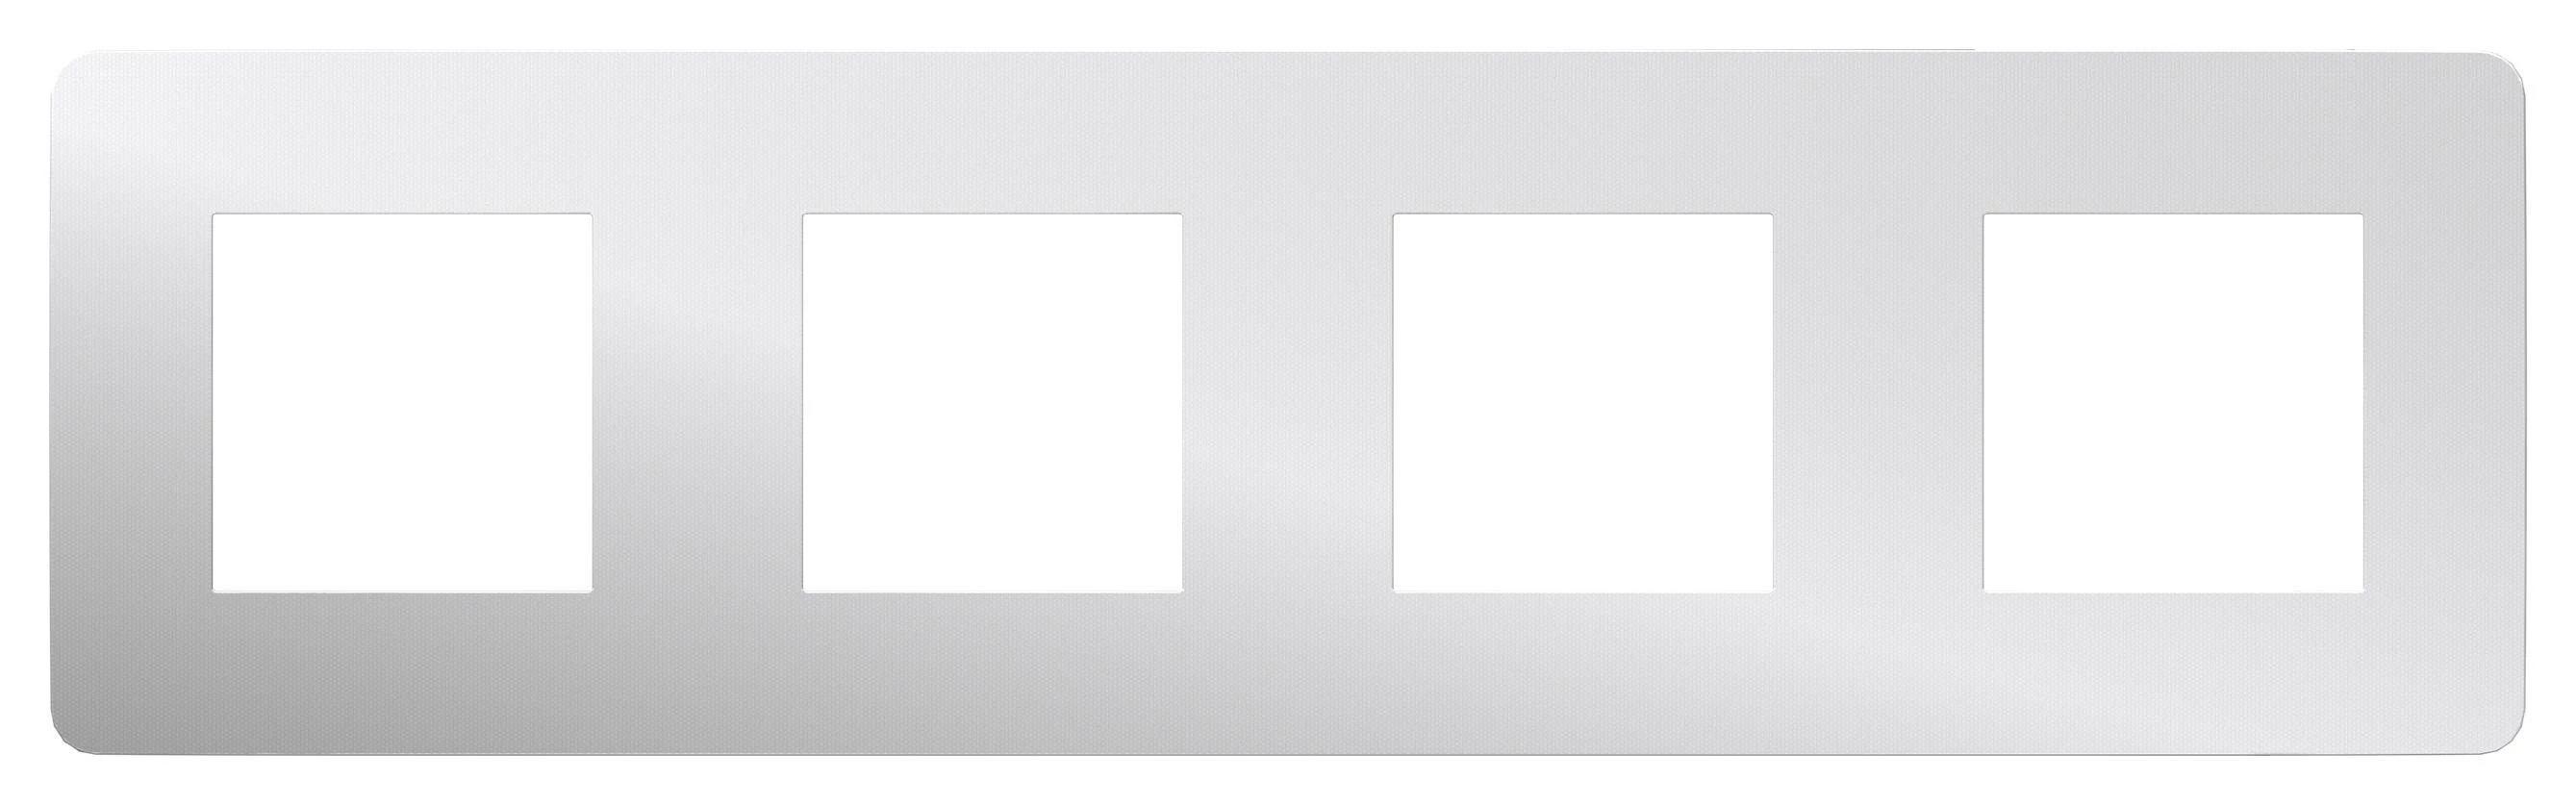  артикул NU280855 название Рамка 4-ая (четверная) , Хром/Белый, серия Unica Studio, Schneider Electric